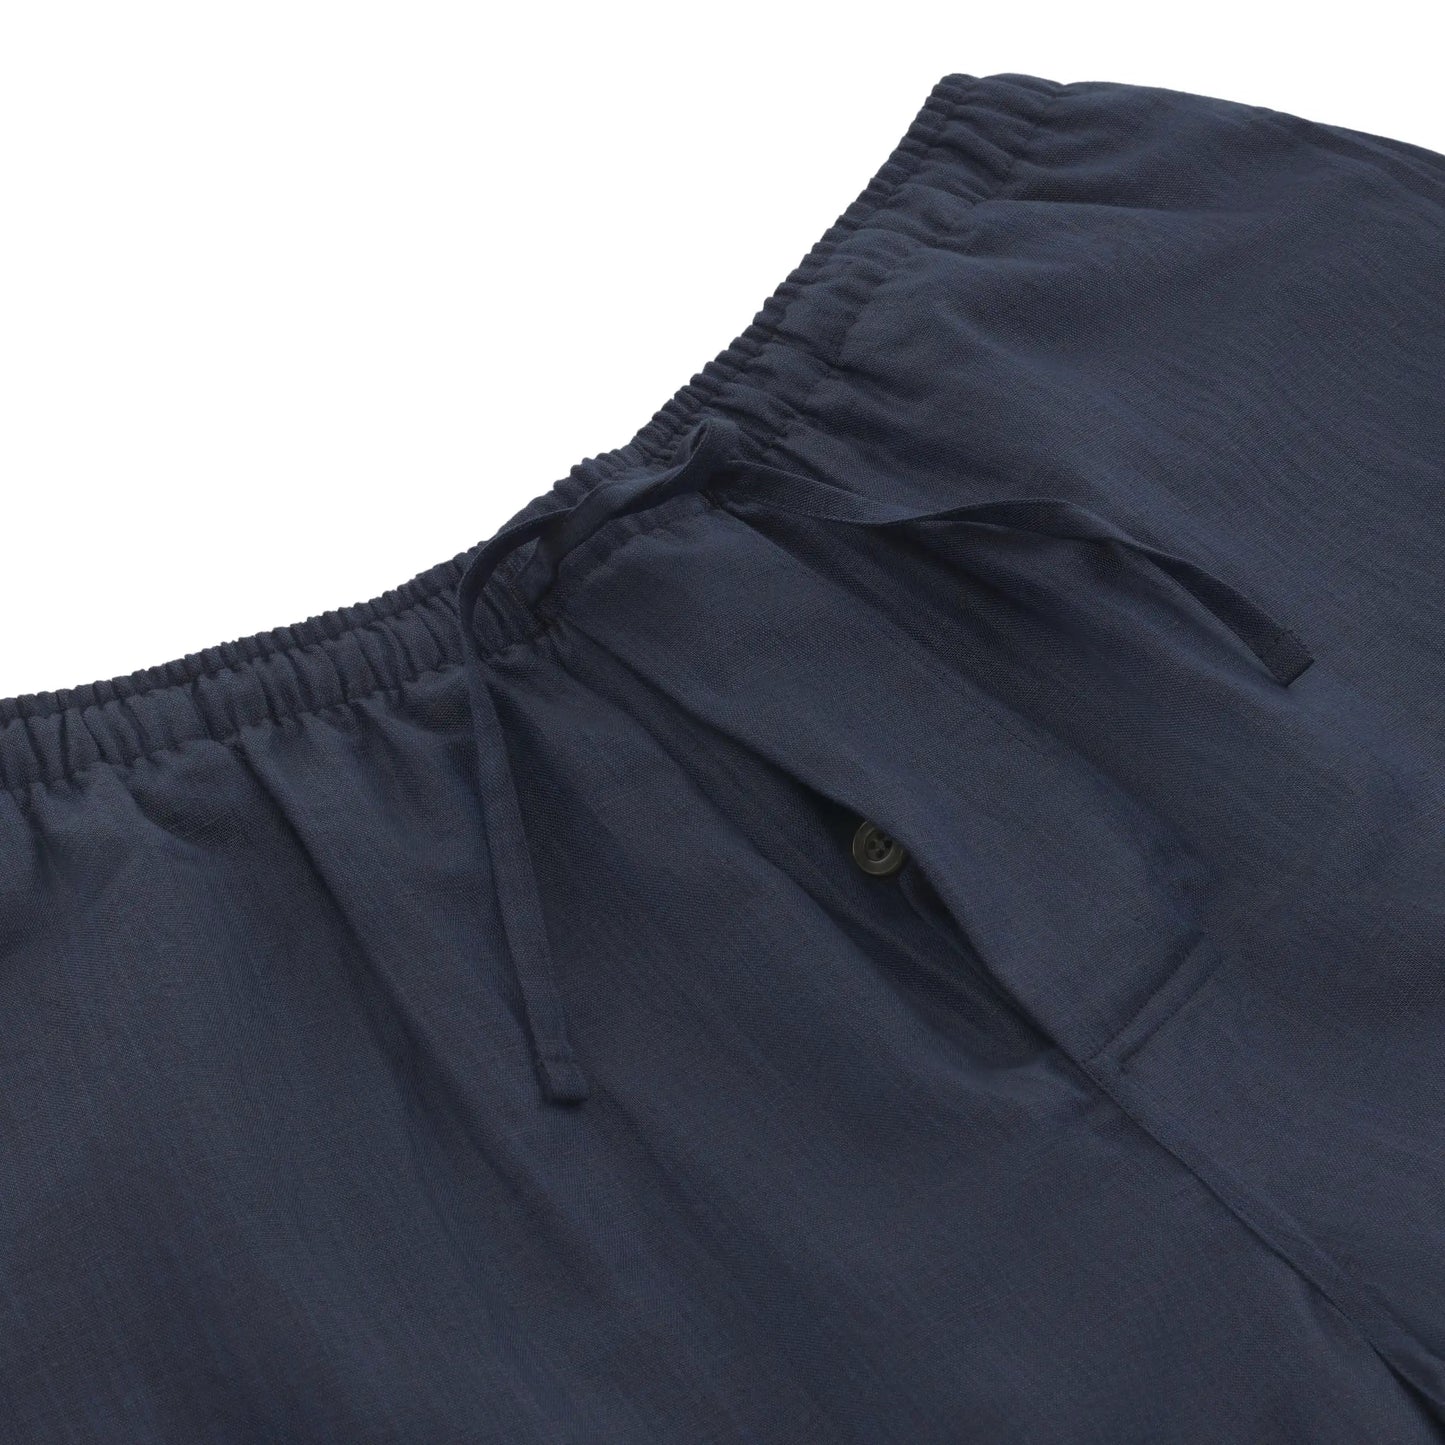 Zimmerli Linen - Cotton Blend Shorts in Midnight Blue - SARTALE